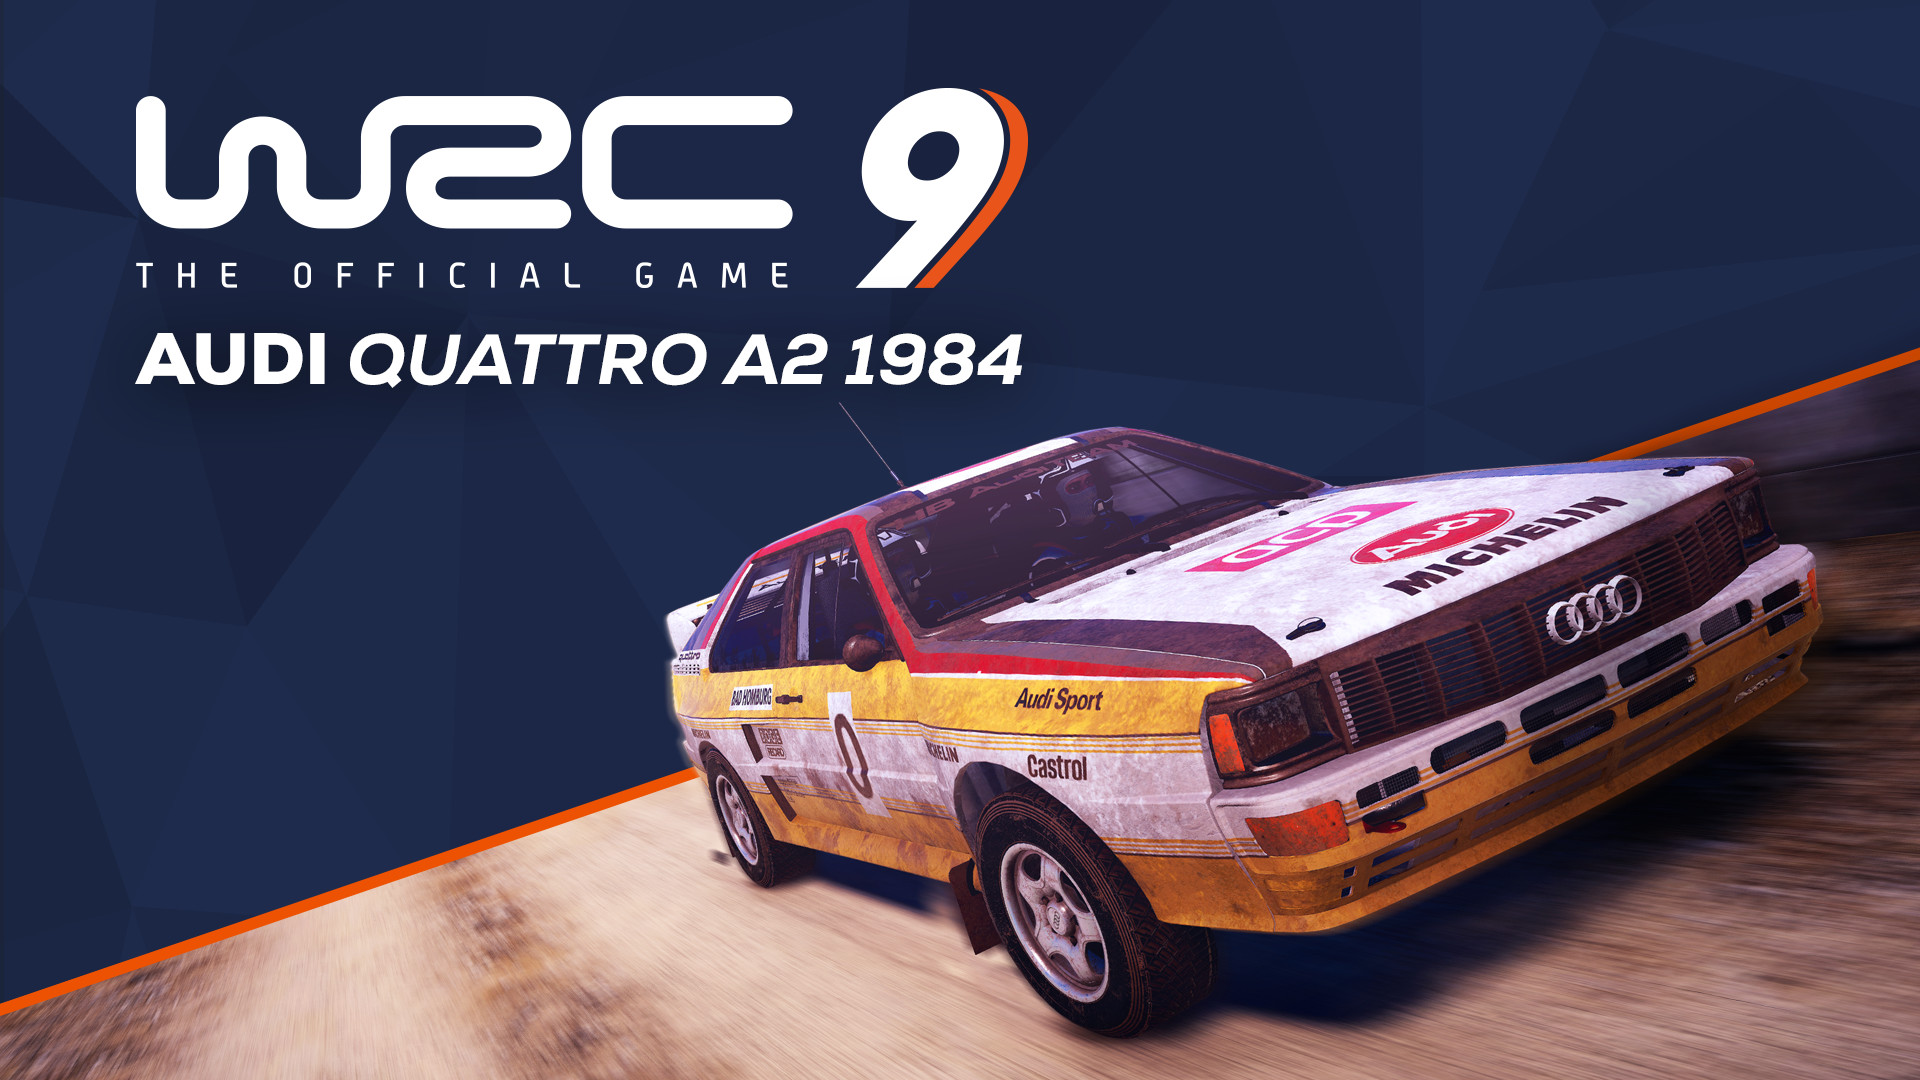 WRC 9 - Audi Quattro A2 1984 DLC Steam CD Key (1.83$)